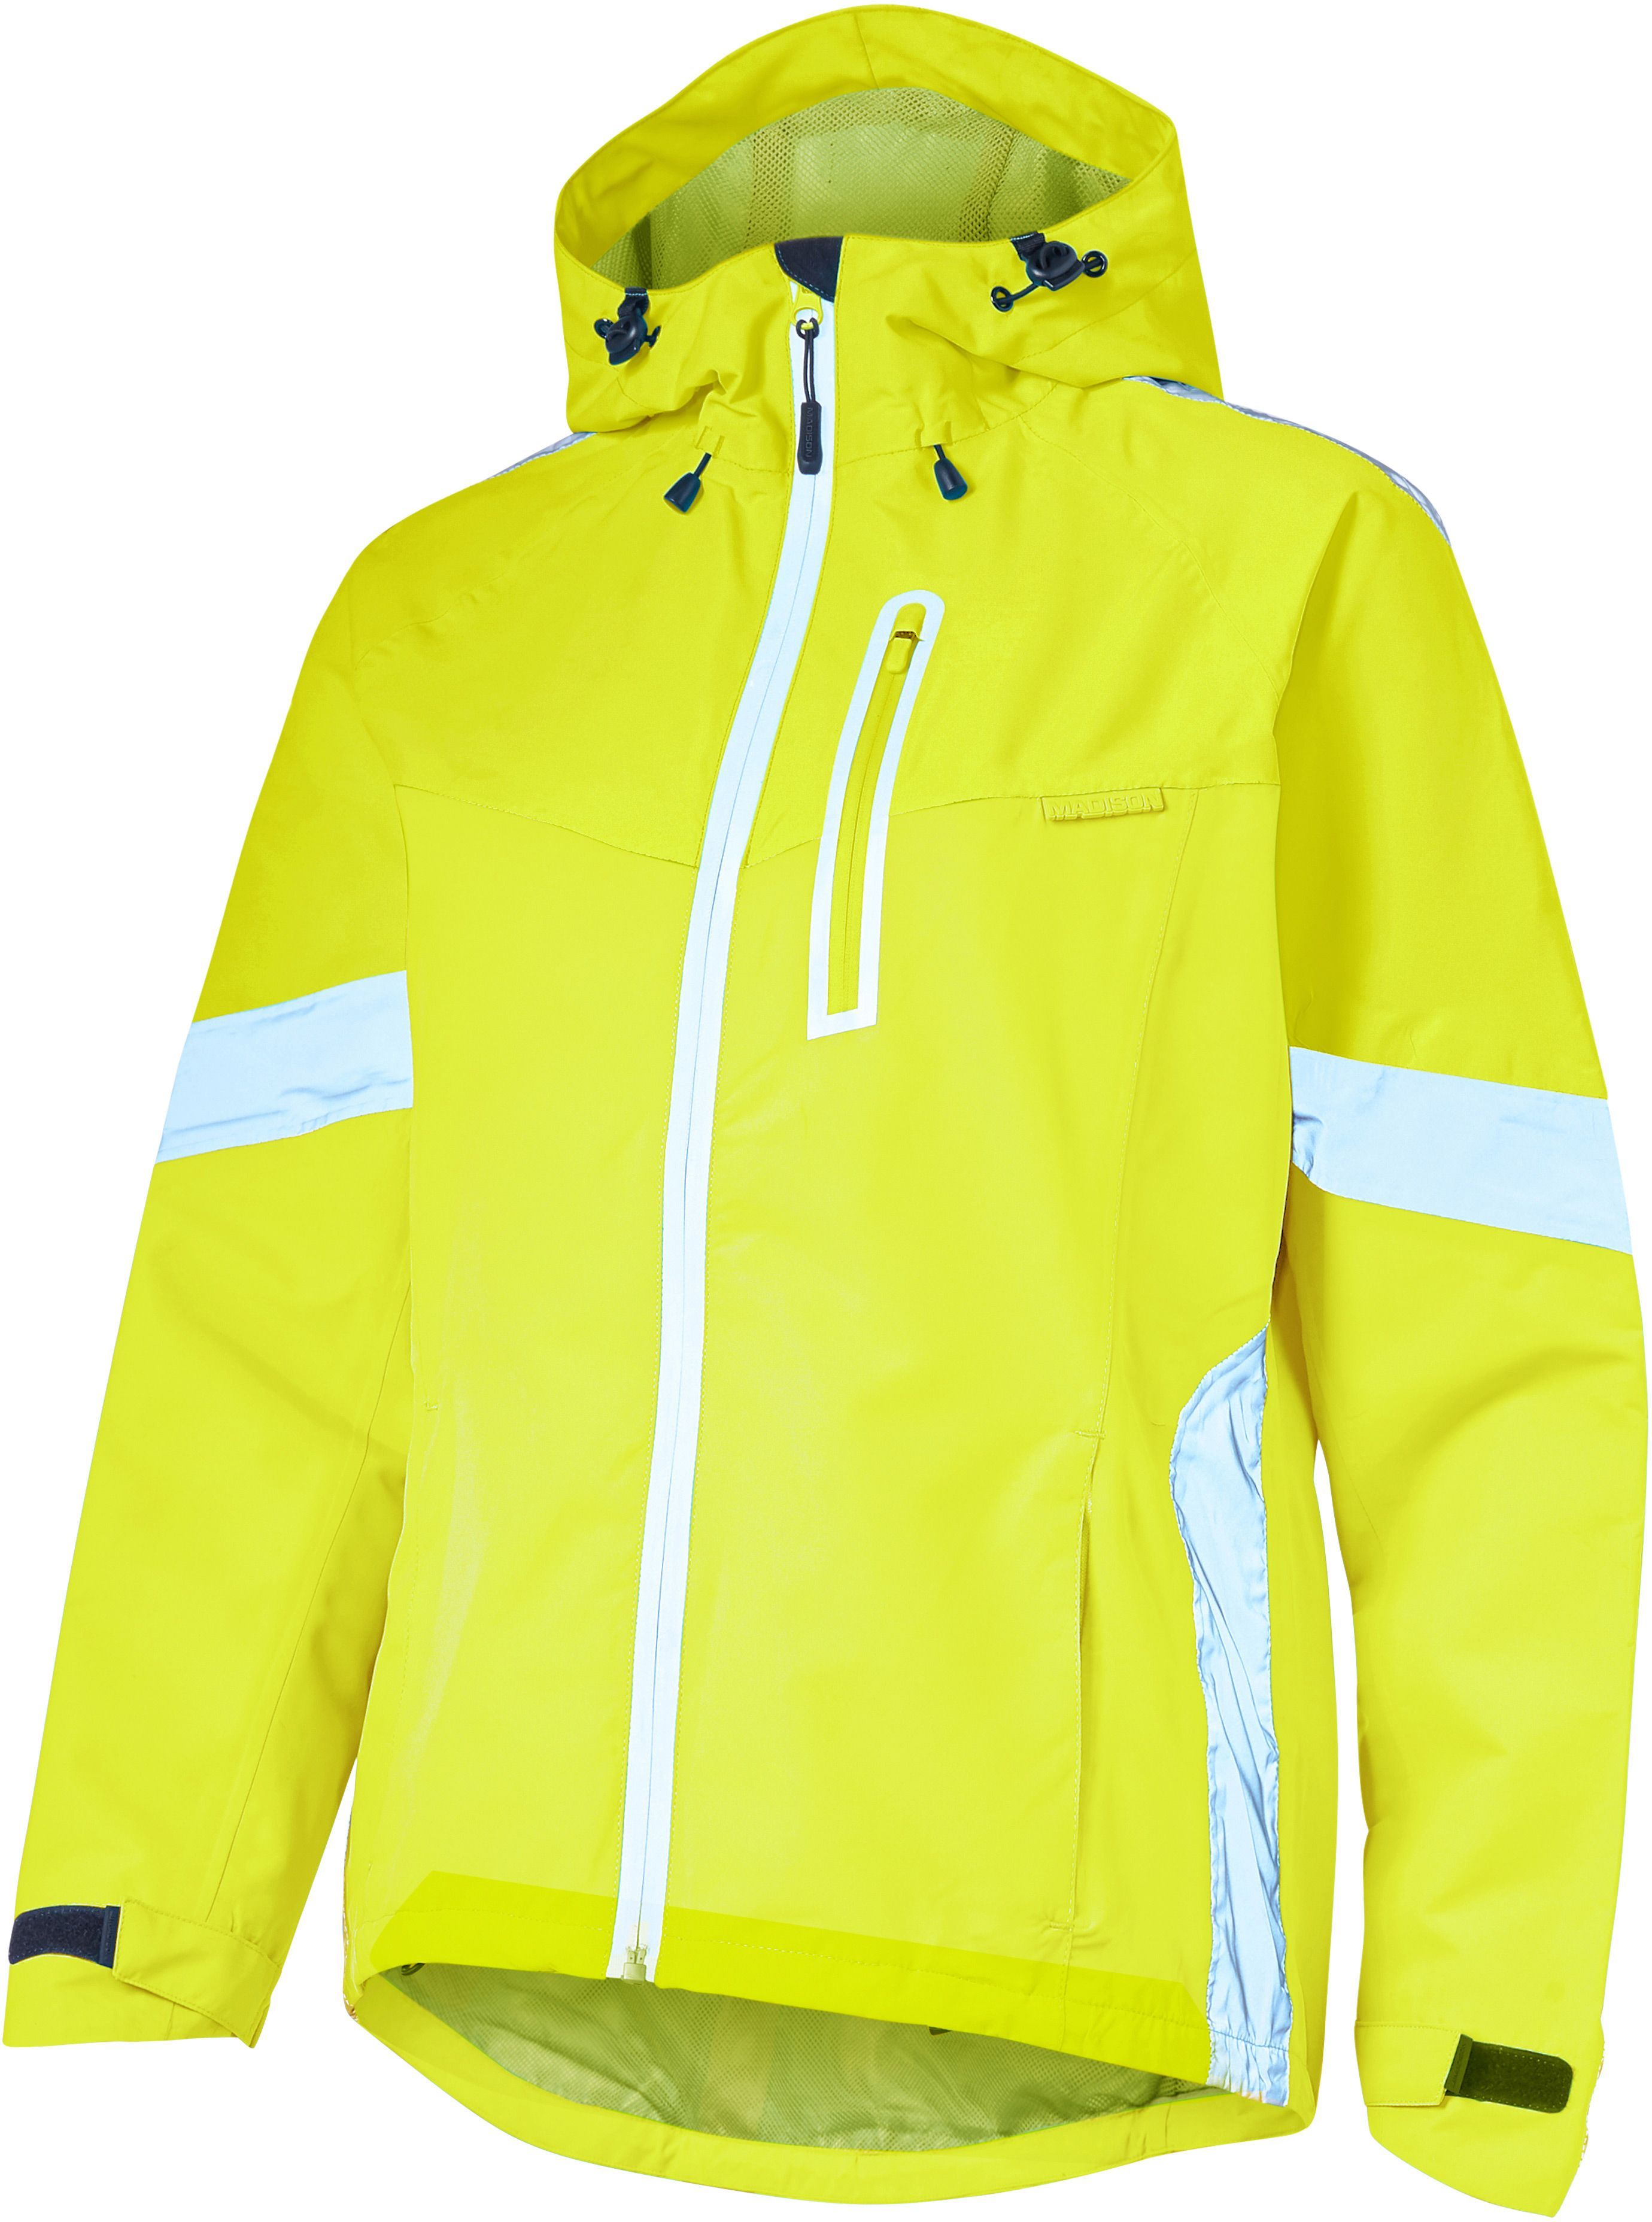 Madison Prima Womens Waterproof Jacket Size 8 - £34.99 | Jackets ...